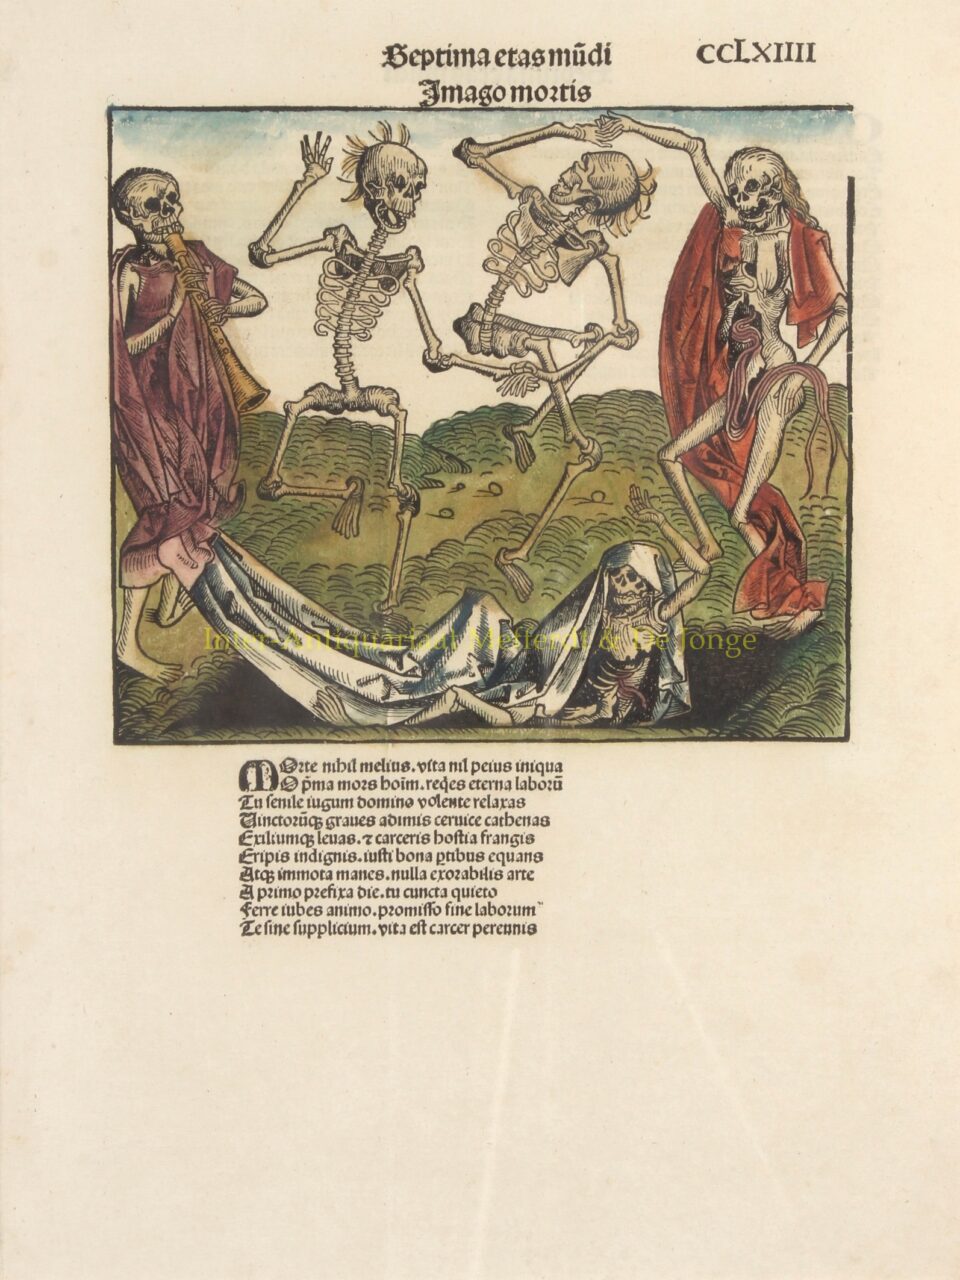 Dance of Skeletons - Michael Wolgemut